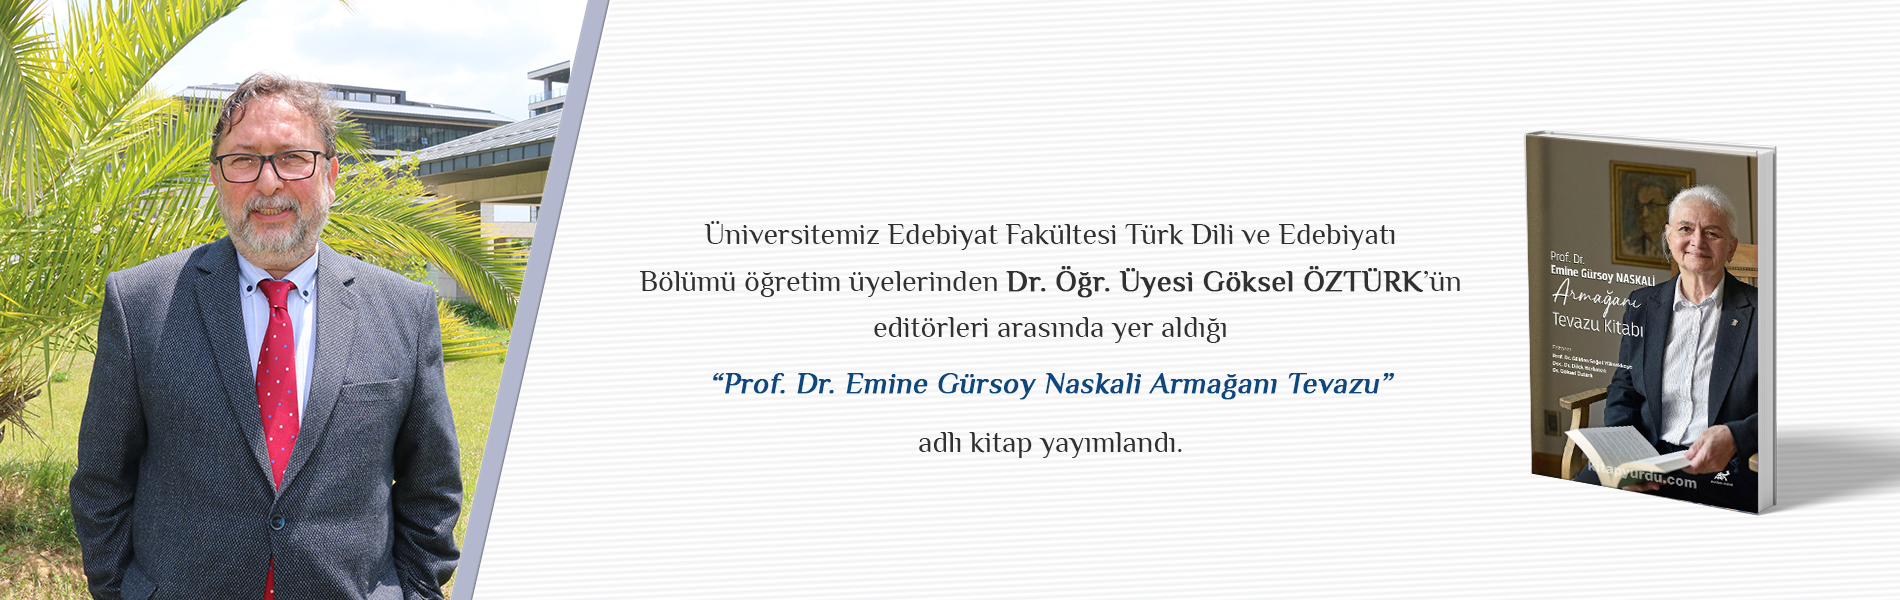 Dr. Öğr. Üyesi Göksel ÖZTÜRK’ün Editörleri Arasında Yer Aldığı "Prof. Dr. Emine Gürsoy Naskali Armağanı Tevazu" Adlı Kitap Yayımlandı